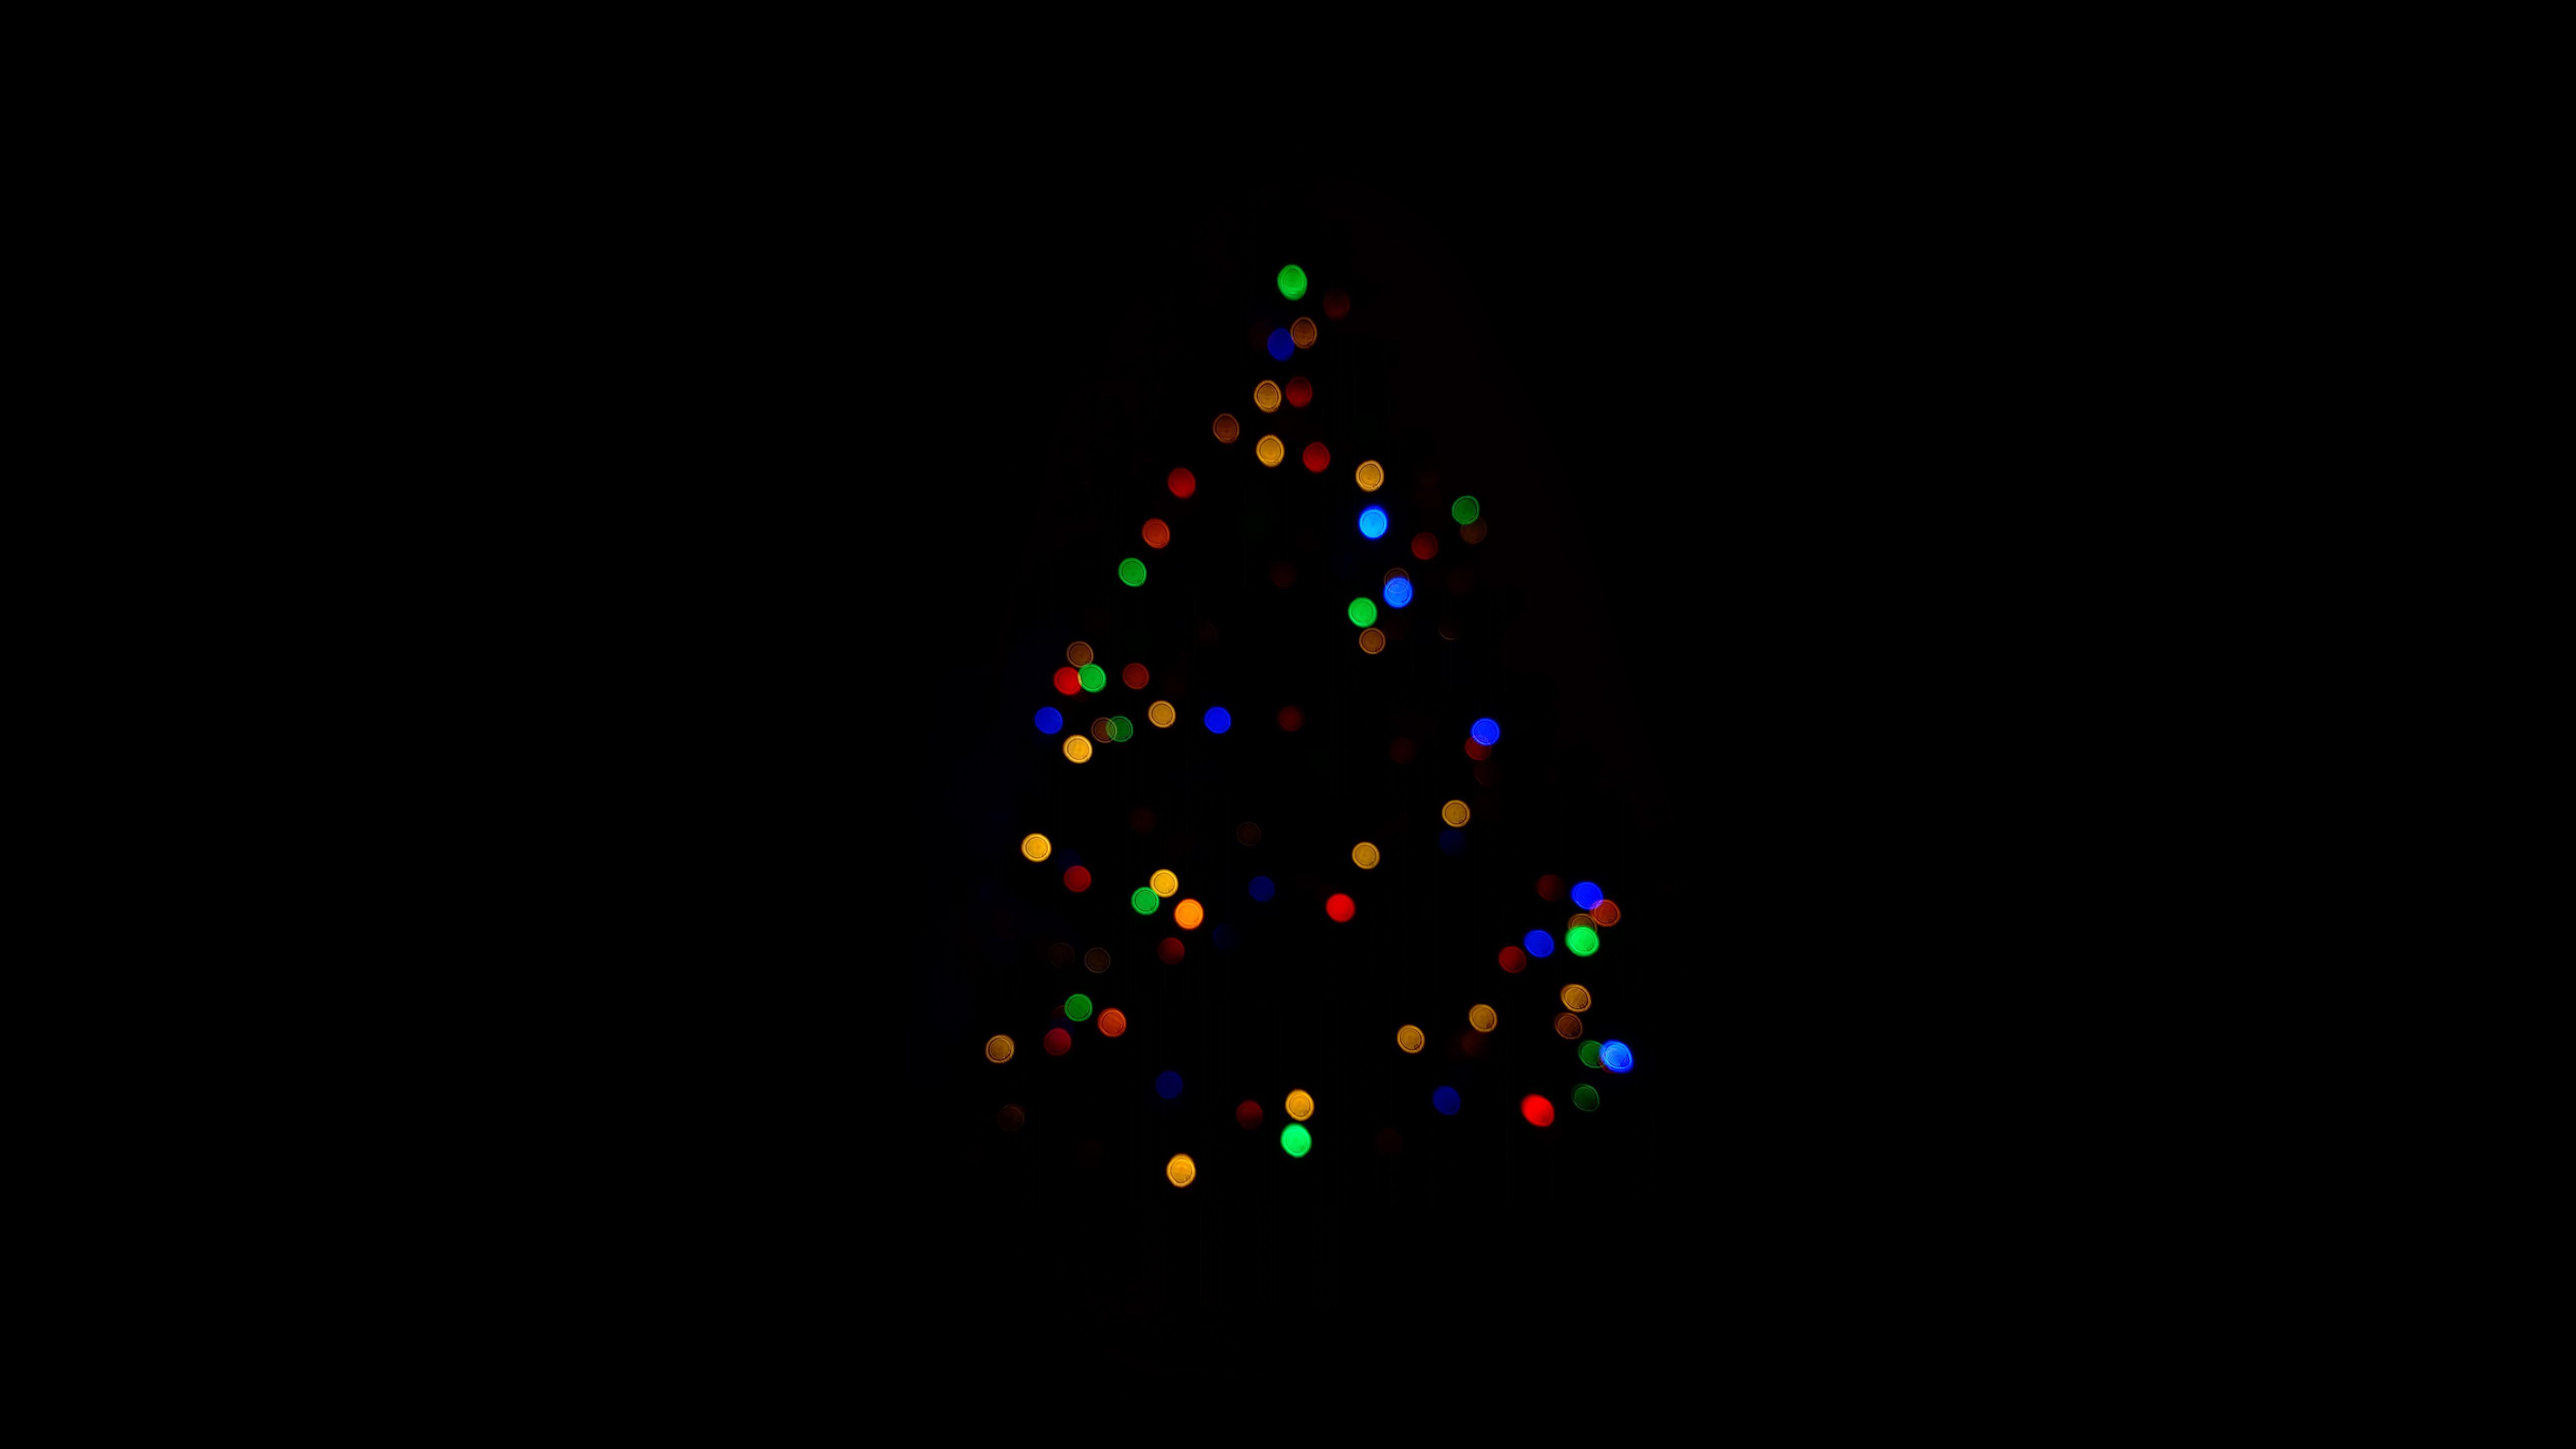 Hình nền Giáng sinh tối giản 4K: Nếu bạn yêu thích những hình ảnh tối giản, đơn giản nhưng lại mang lại sự ấm áp, thân thiện, thì hình nền Giáng sinh tối giản 4K chắc chắn là sự lựa chọn cho bạn. Với những mảng màu pastel, hình ảnh đơn giản như bóng giáng sinh, chim mùa đông sẽ mang đến cho bạn sự sang trọng, trẻ trung.